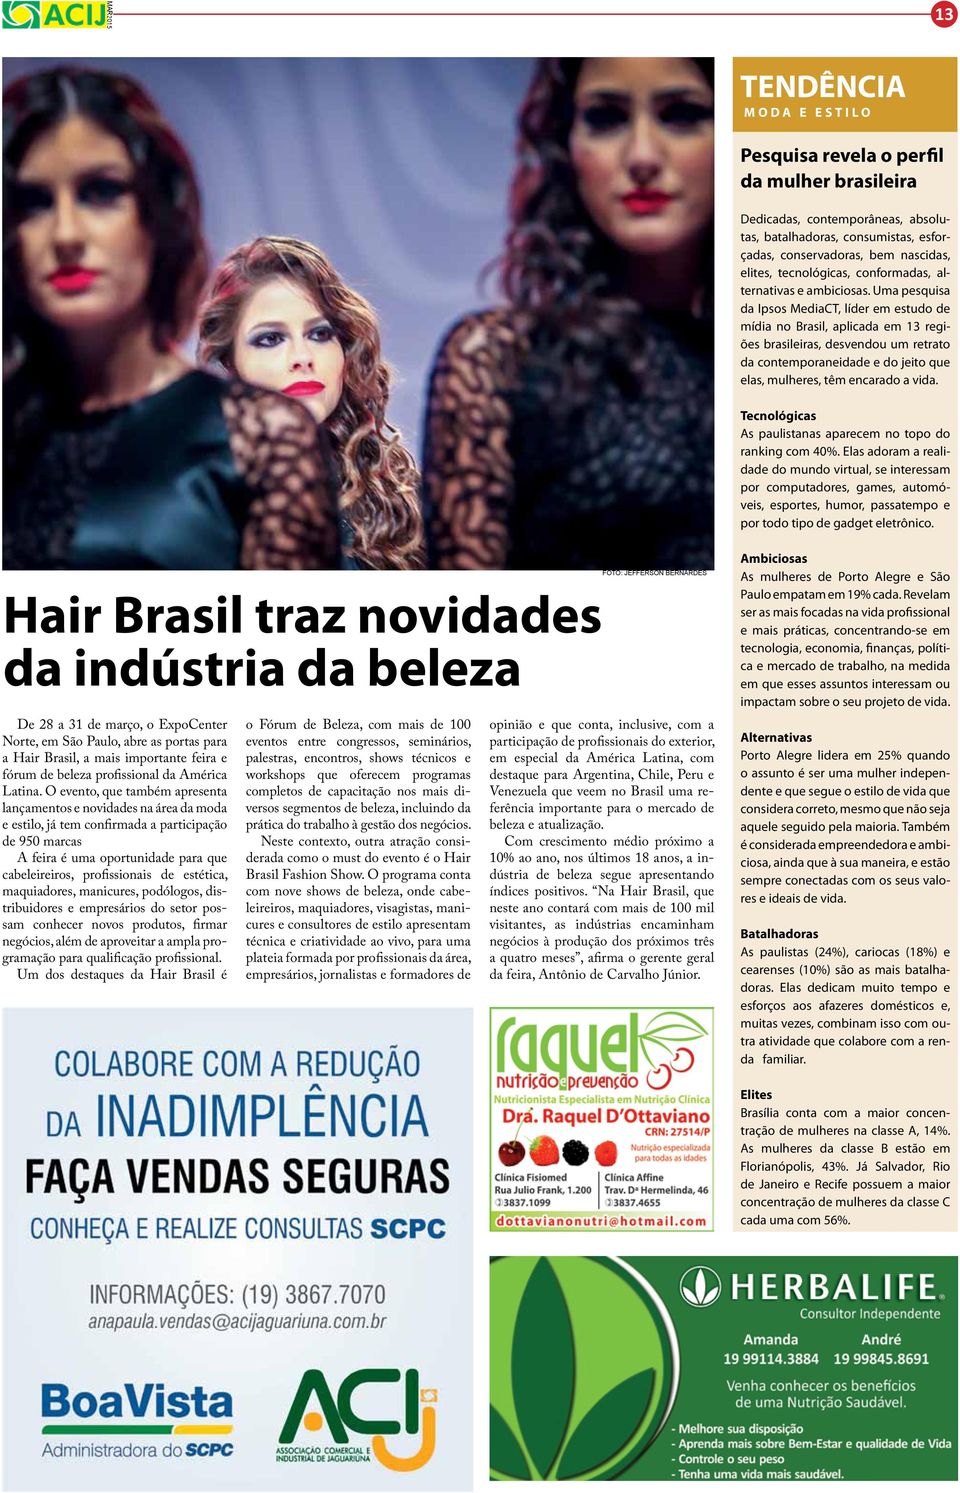 Uma pesquisa da Ipsos MediaCT, líder em estudo de mídia no Brasil, aplicada em 13 regiões brasileiras, desvendou um retrato da contemporaneidade e do jeito que elas, mulheres, têm encarado a vida.